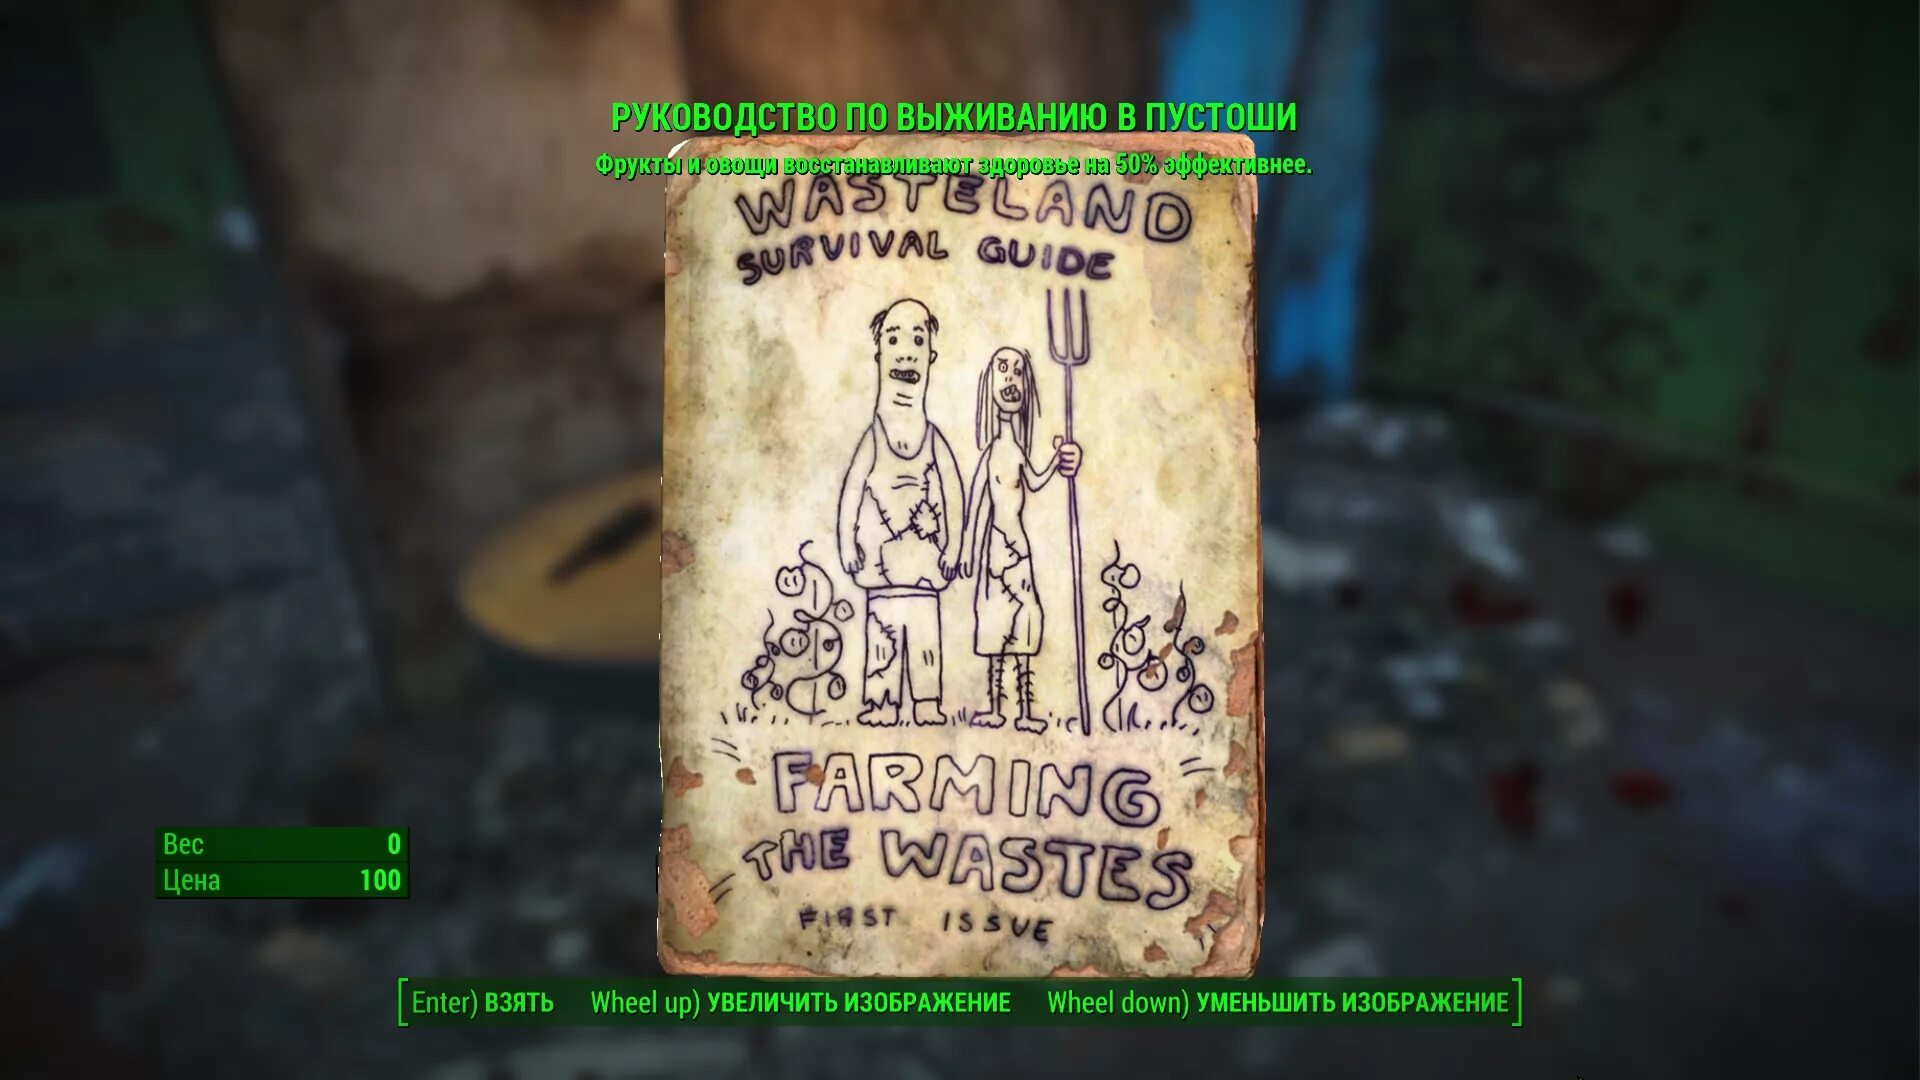 Медорфенов 1 пустоши. Fallout руководство по выживанию. Wasteland Survival Guide.